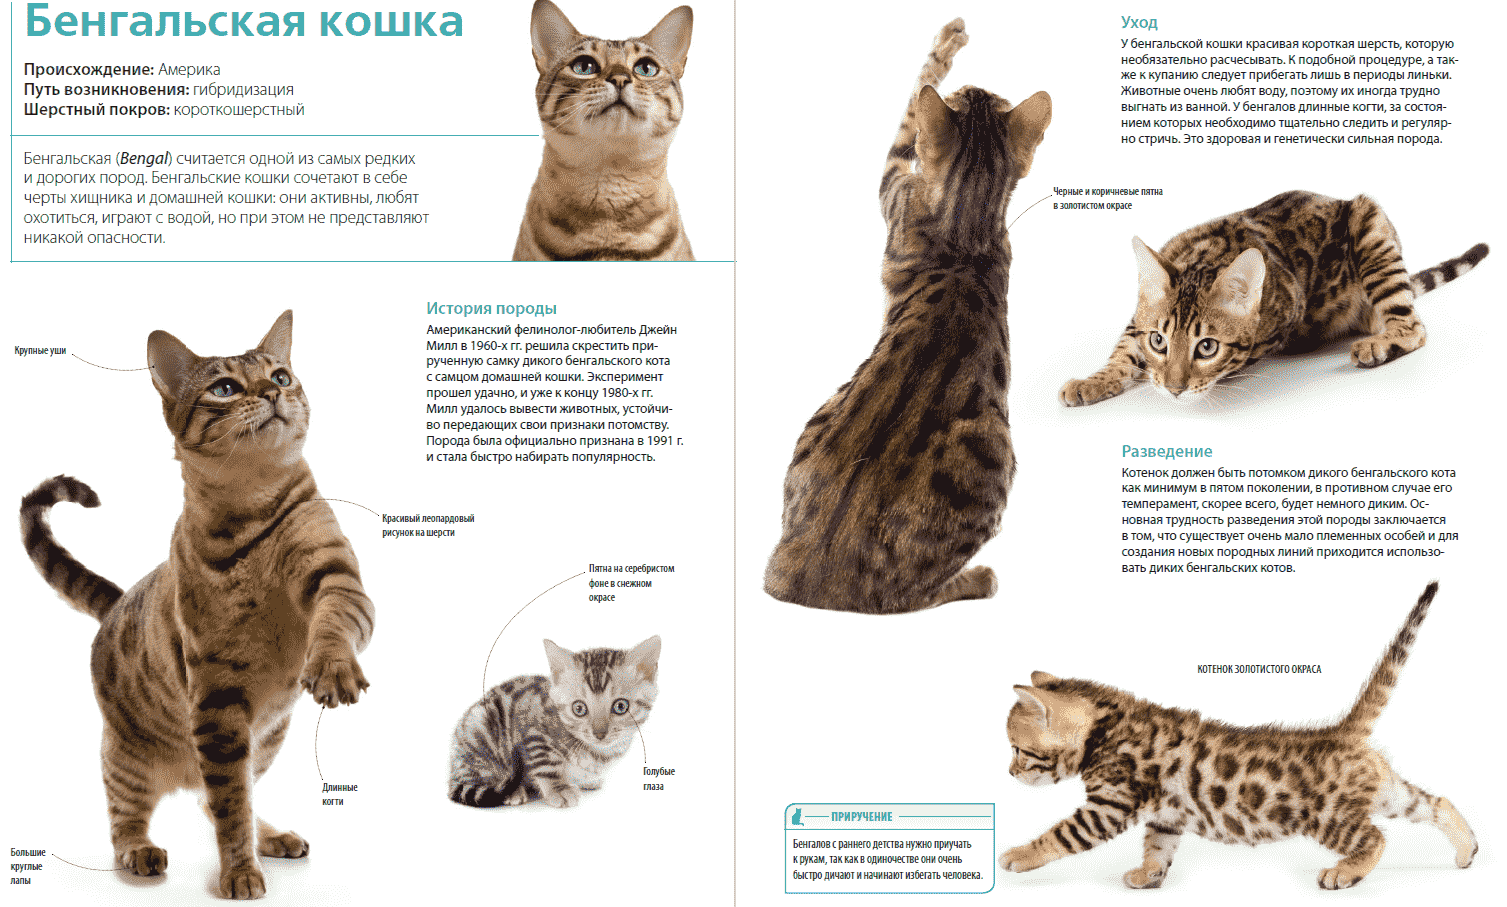 Бенгальская кошка: описание породы, характер, уход и содержание, чем кормить, фото | zoosecrets